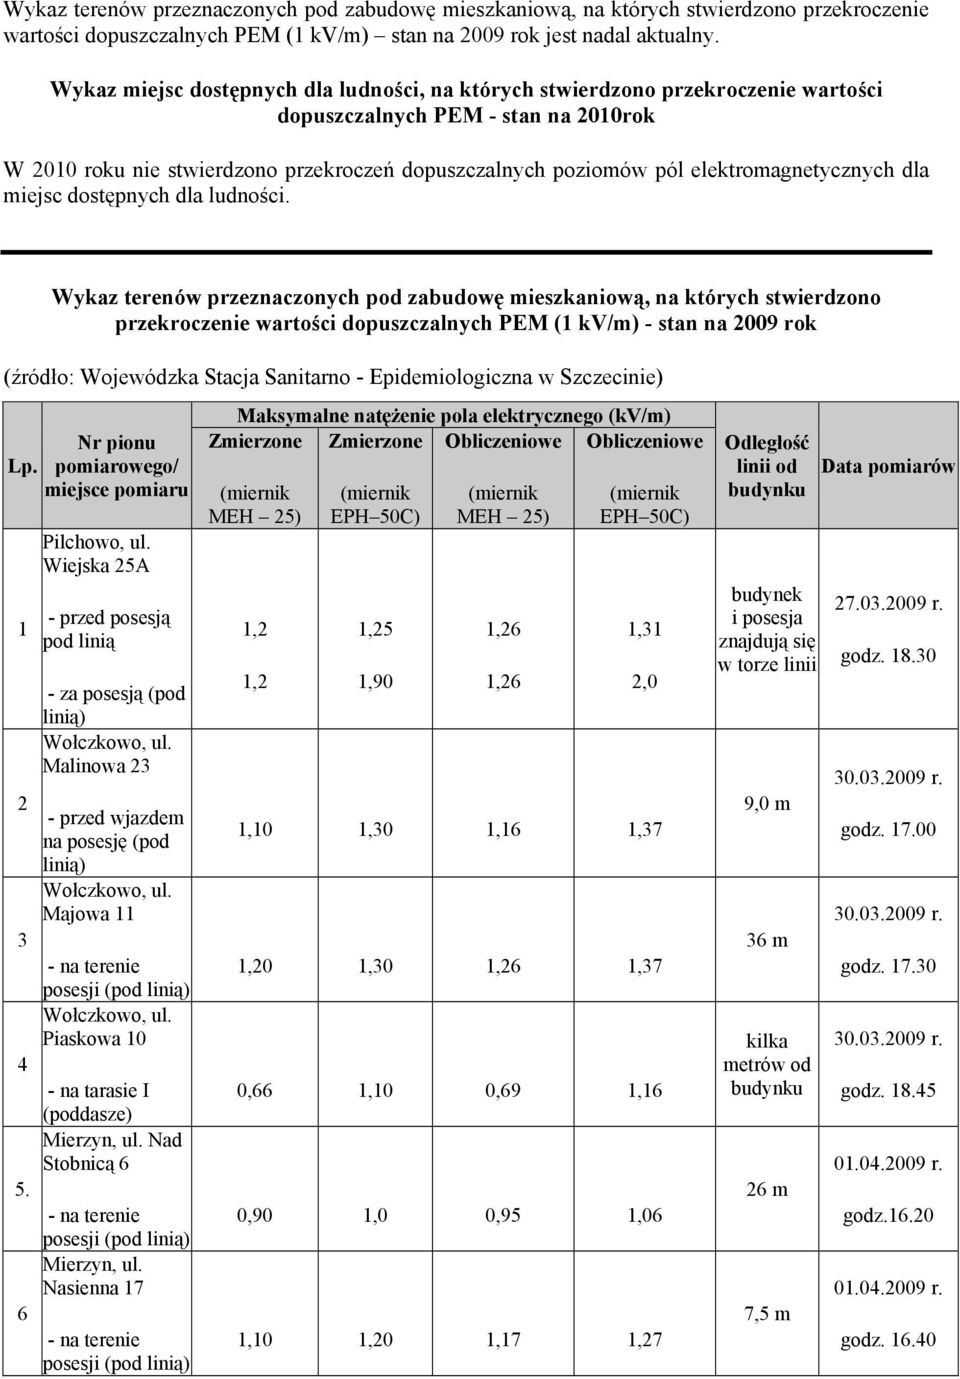 Wykaz terenów przeznaczonych pod zabudowę mieszkaniową, na których stwierdzono przekroczenie wartości dopuszczalnych PEM (1 kv/m) - stan na 2009 rok (źródło: Wojewódzka Stacja Sanitarno -